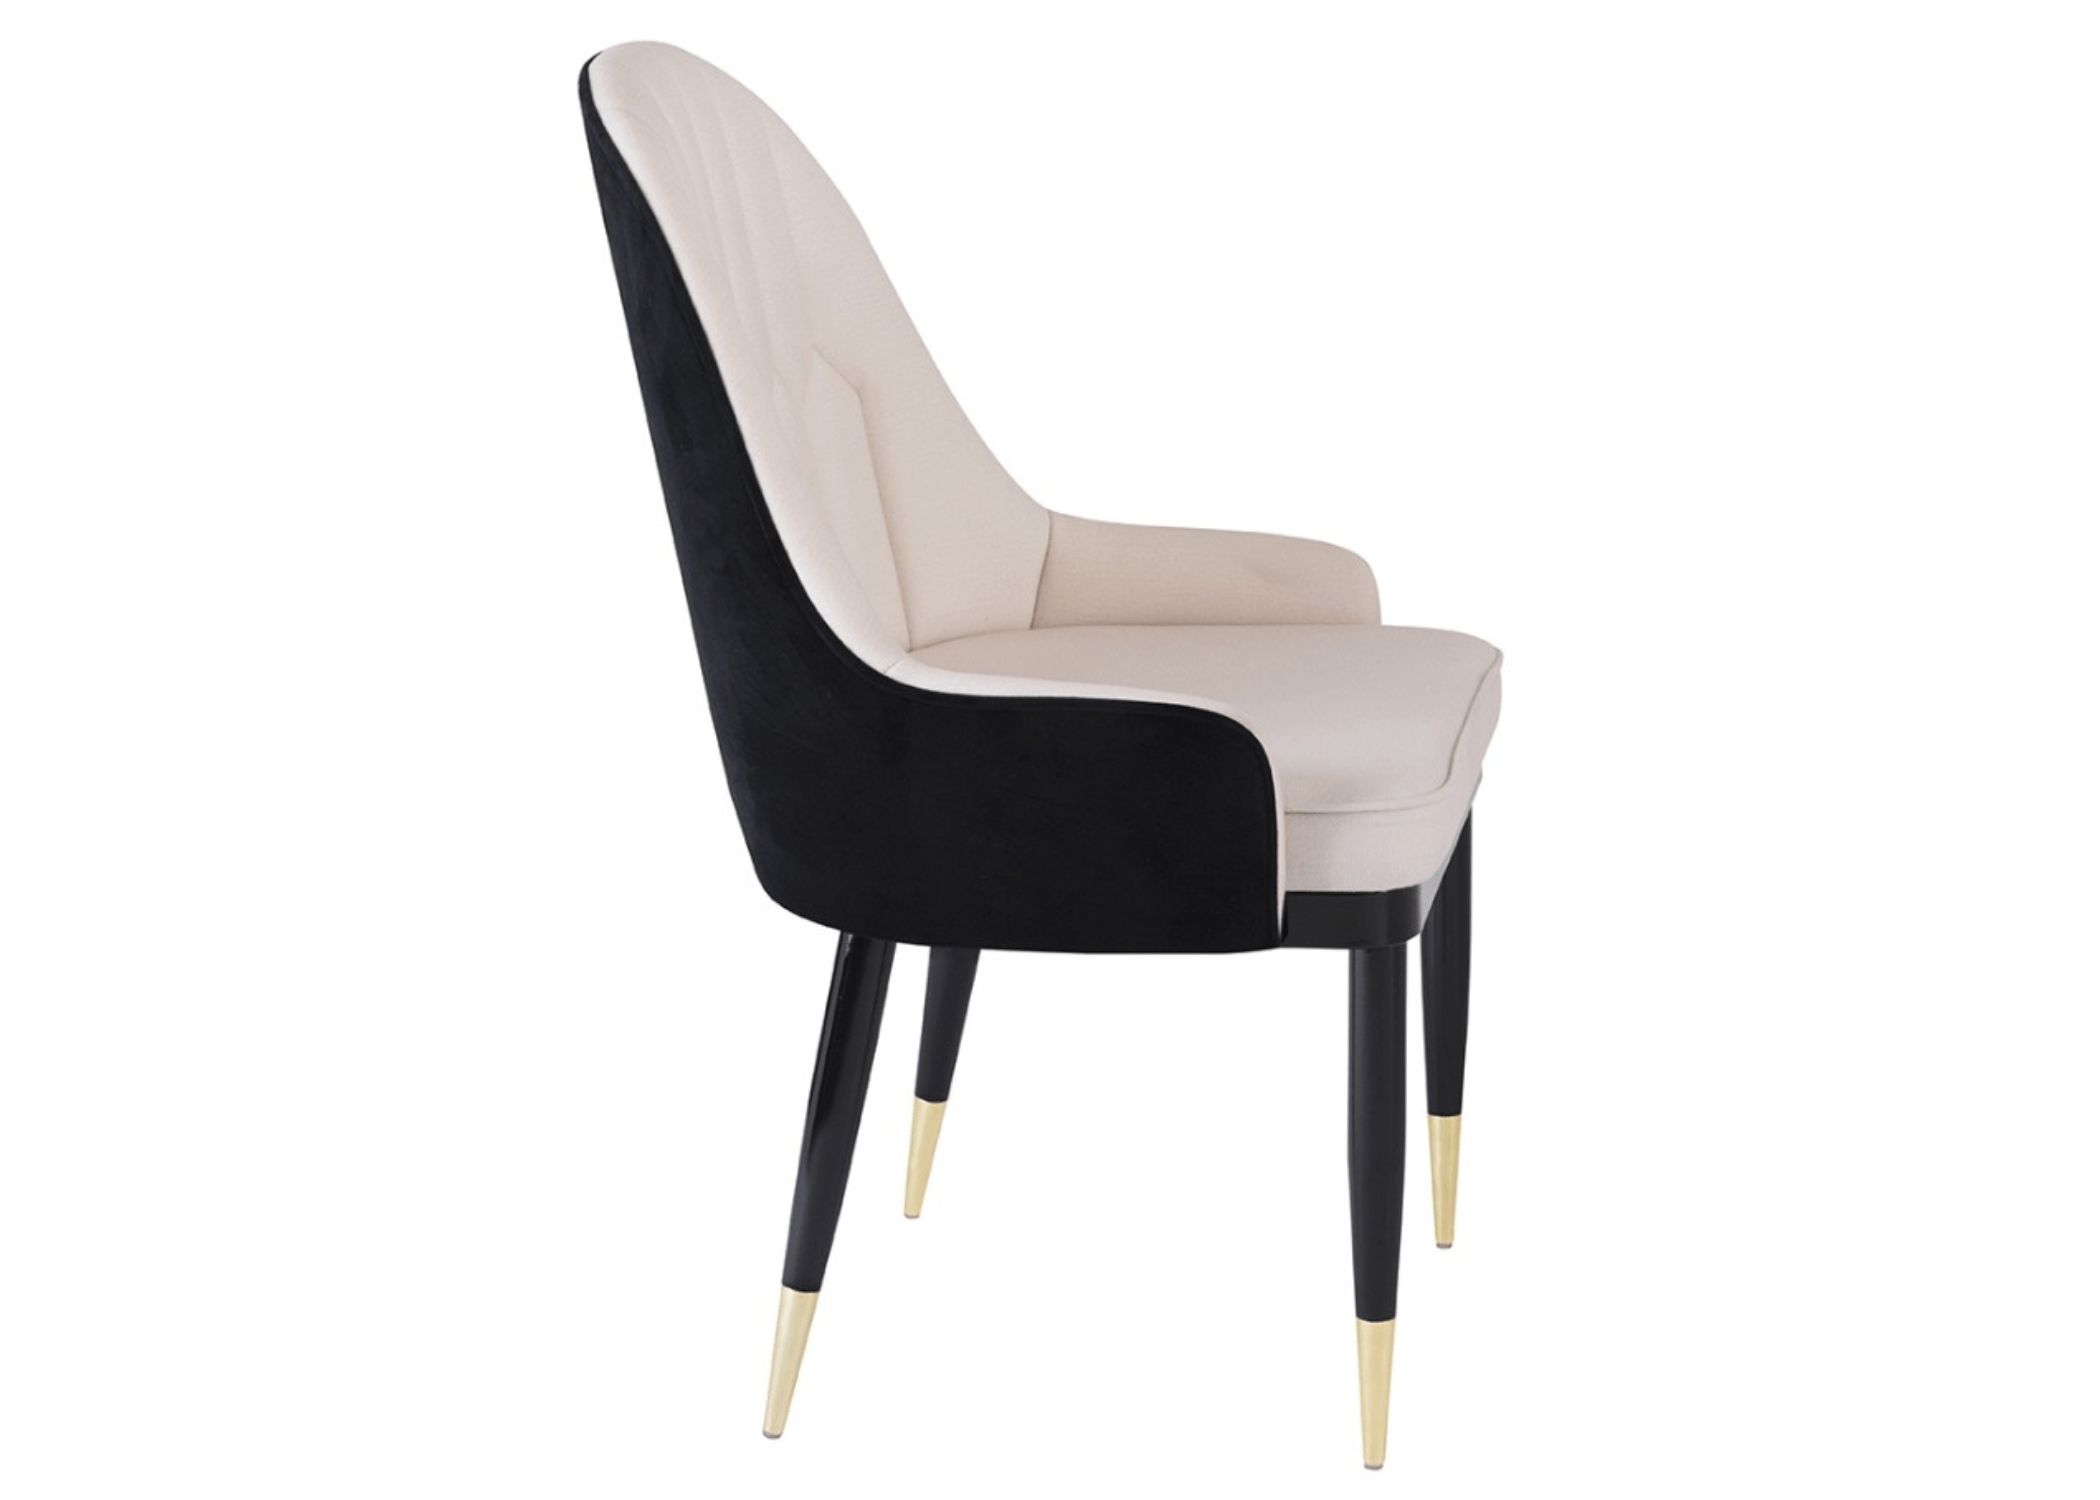 A Cadeira Luxor é uma peça de mobiliário que exala luxo e sofisticação, com um detalhe costurado no encosto que torna verdadeiramente extraordinário.